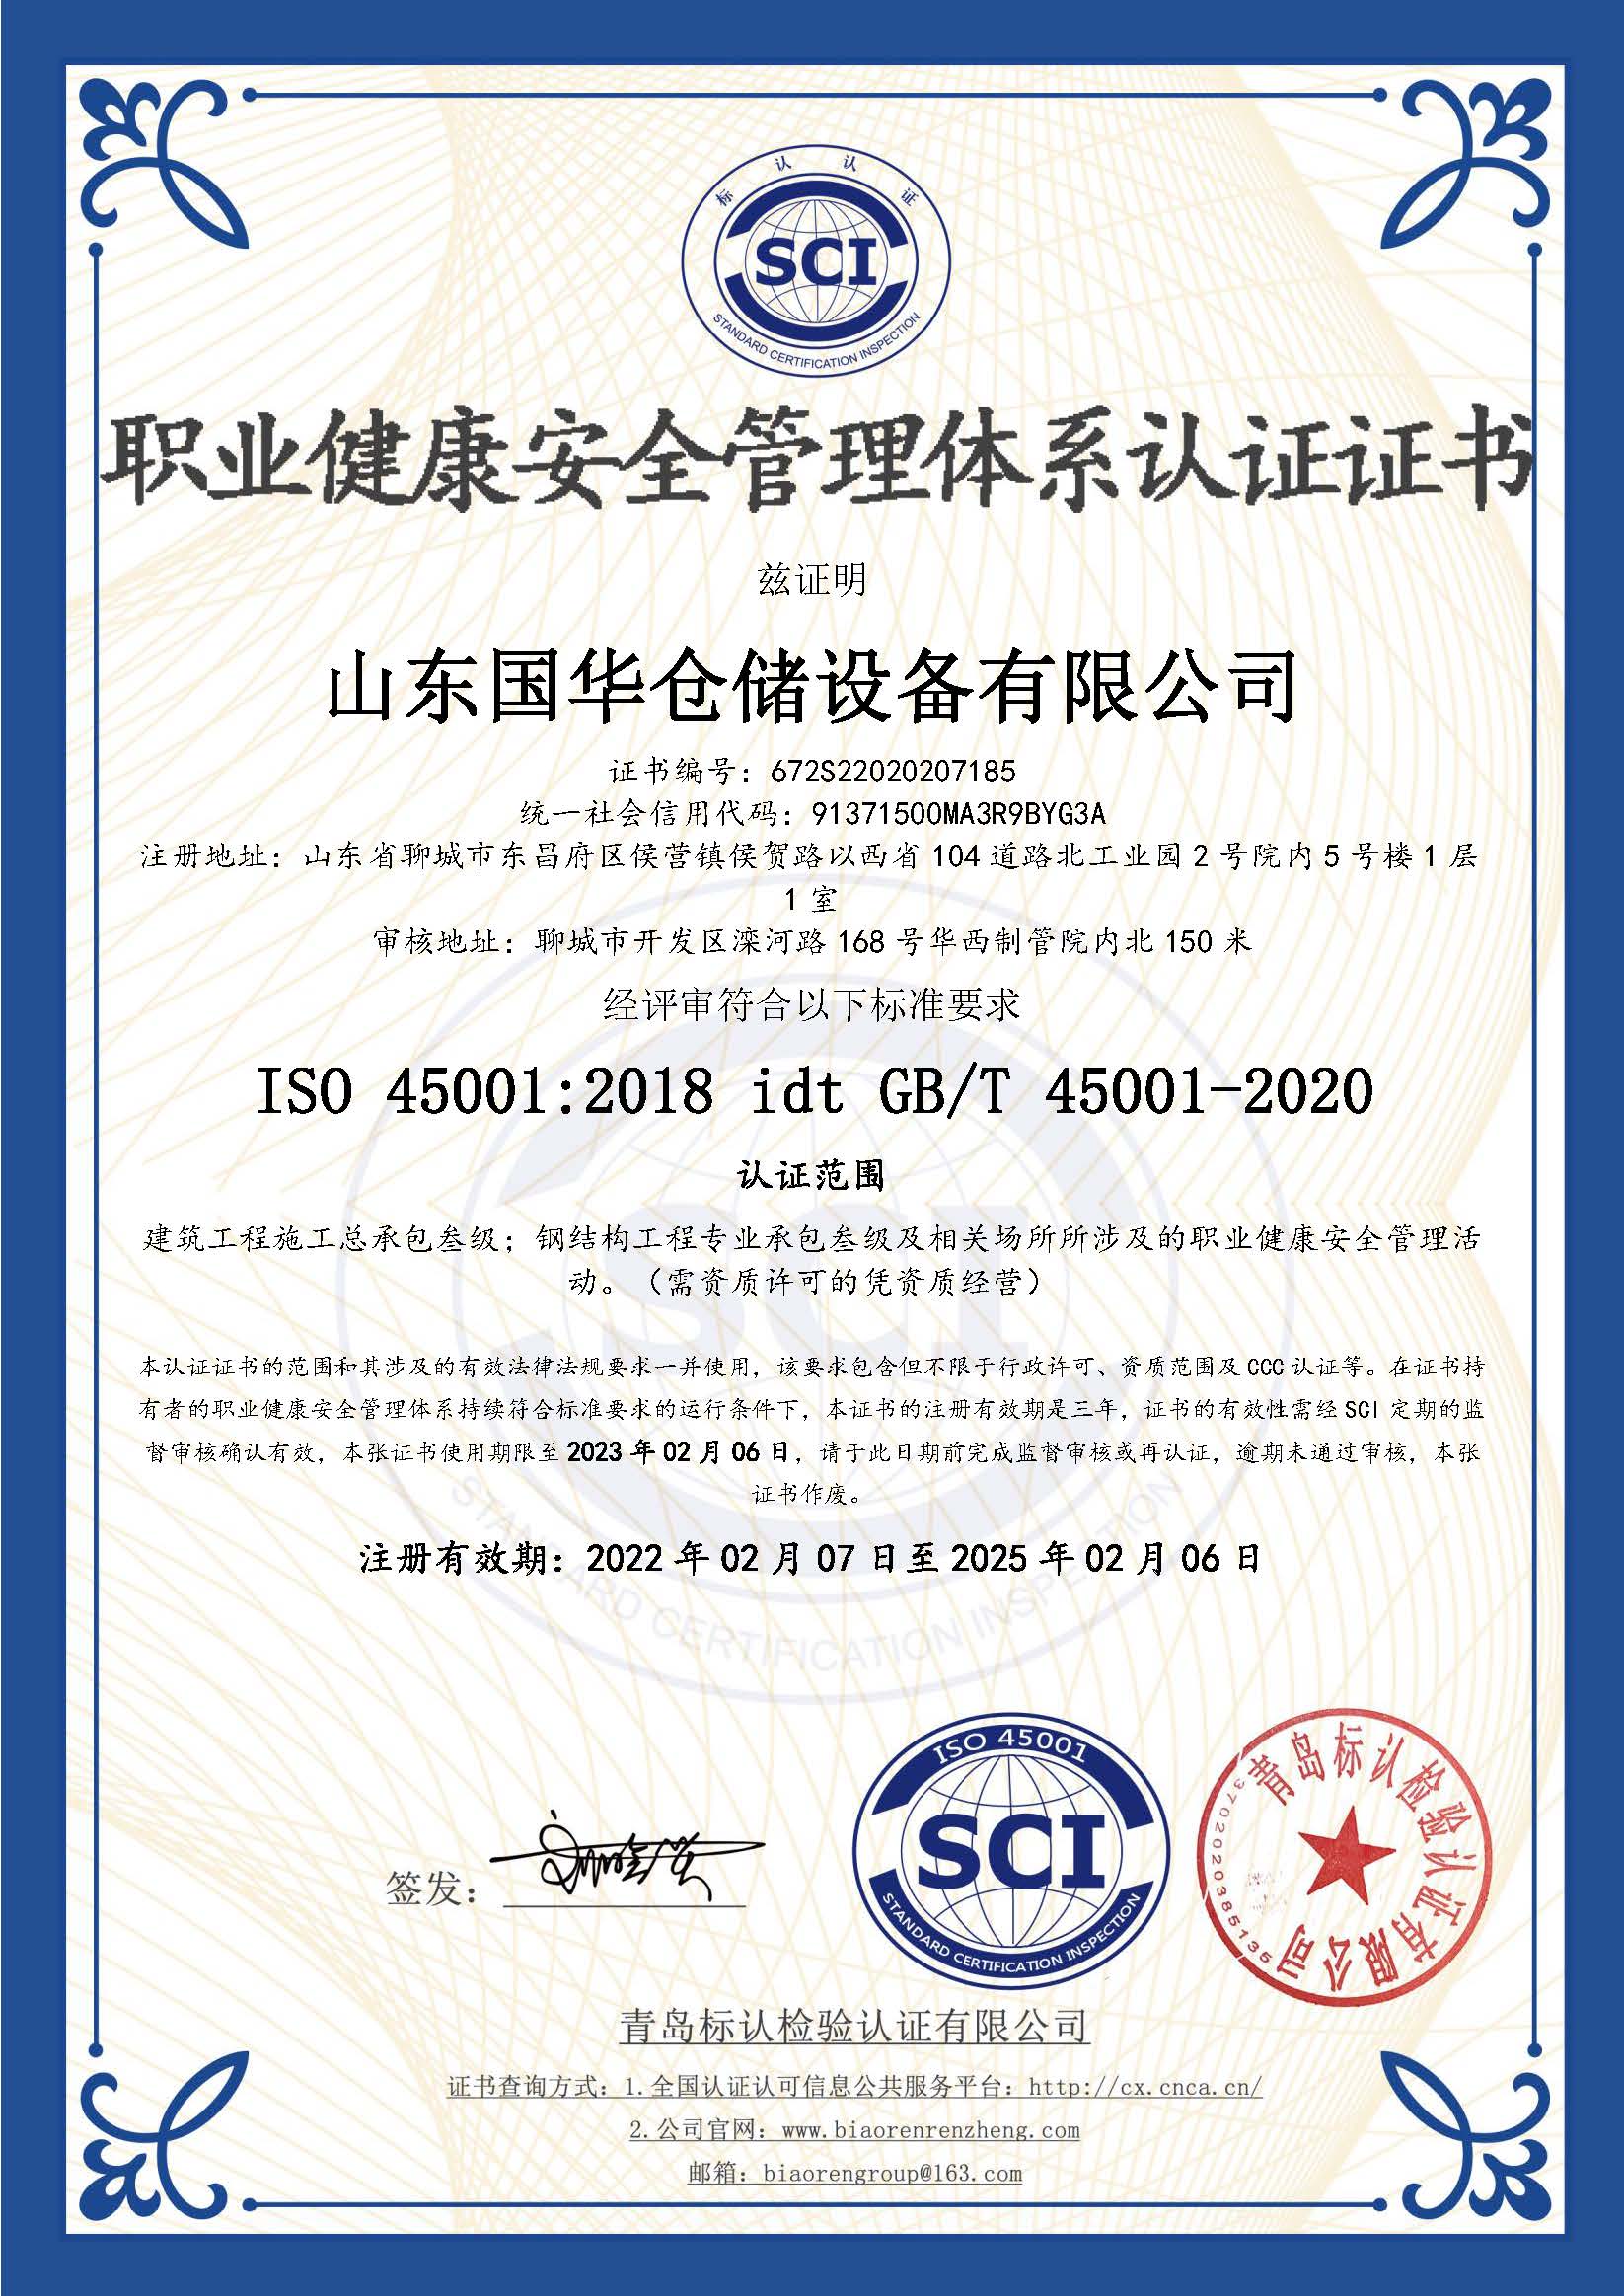 晋城钢板仓职业健康安全管理体系认证证书